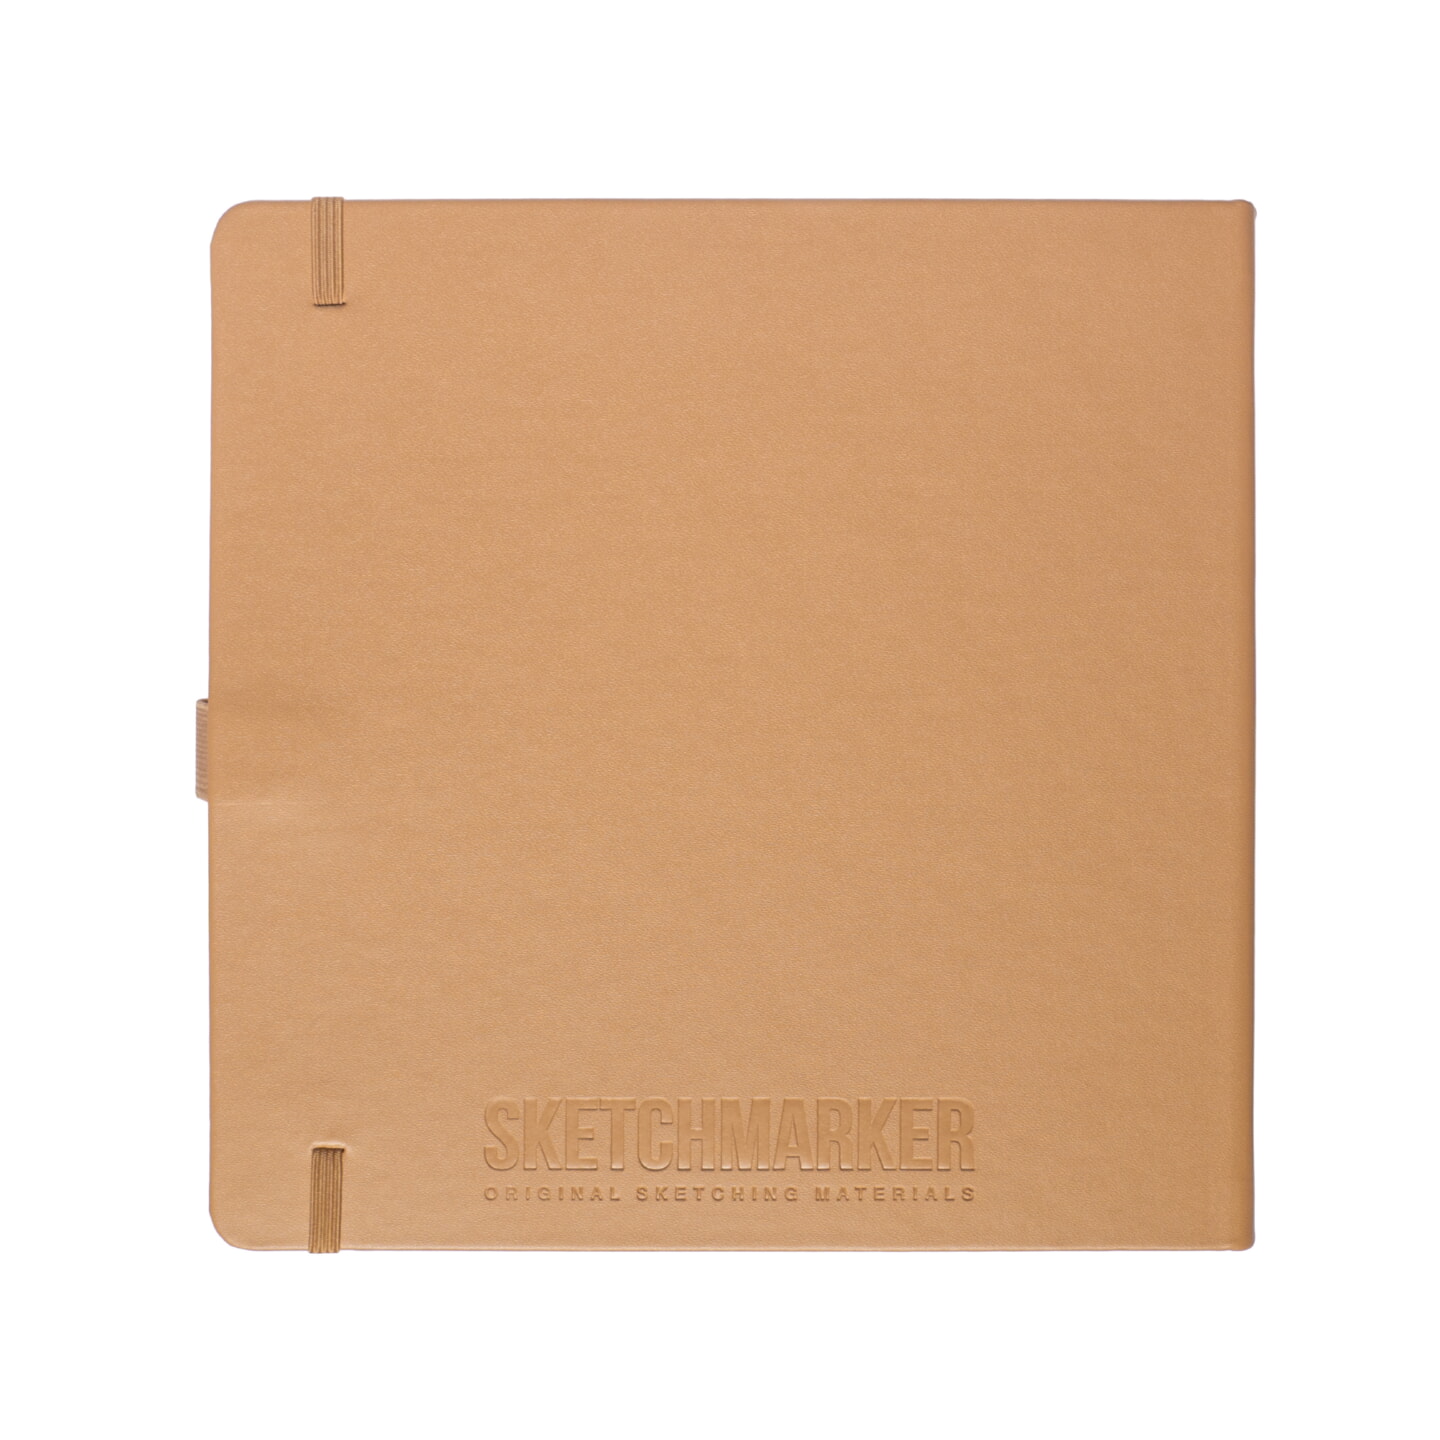 Блокнот для зарисовок Sketchmarker 140г/кв.м 20*20cм 80л твердая обложка Капучино